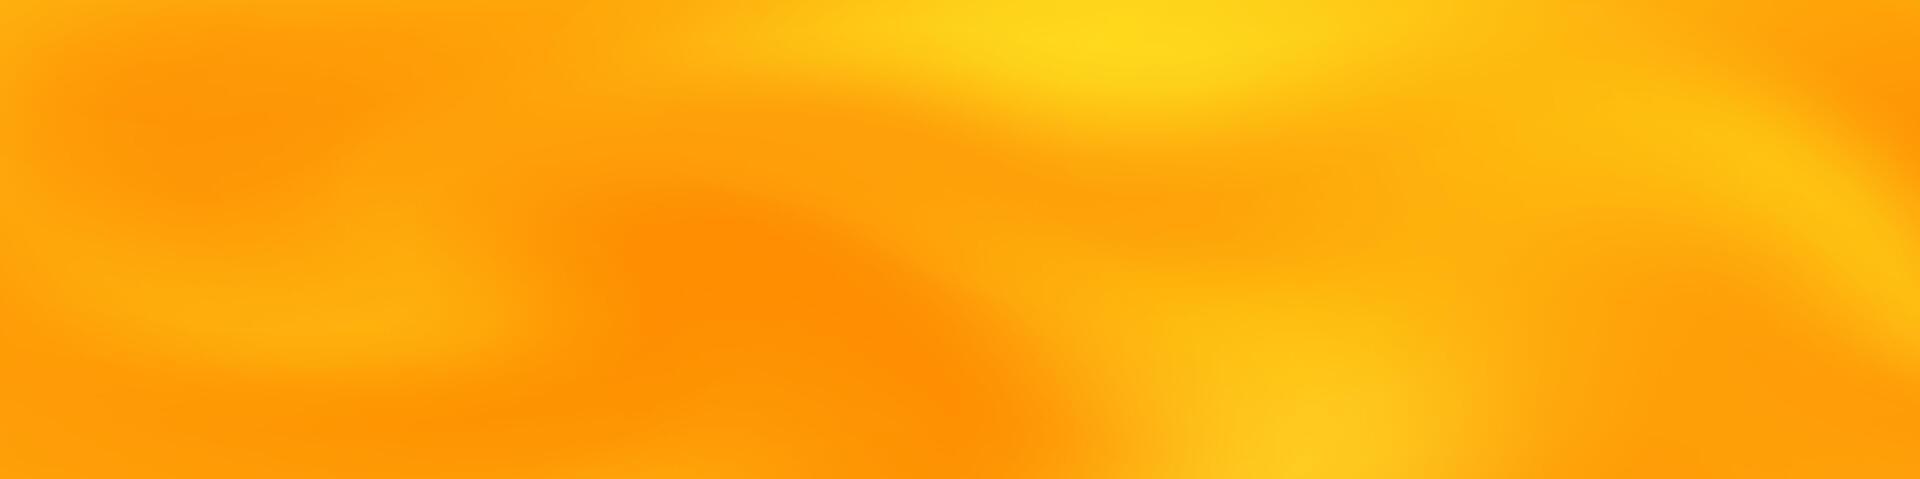 wazig banier in tinten van oranje geel. ideaal voor web spandoeken, sociaal media berichten, of ieder ontwerp project dat vereist: een rustgevend backdrop vector